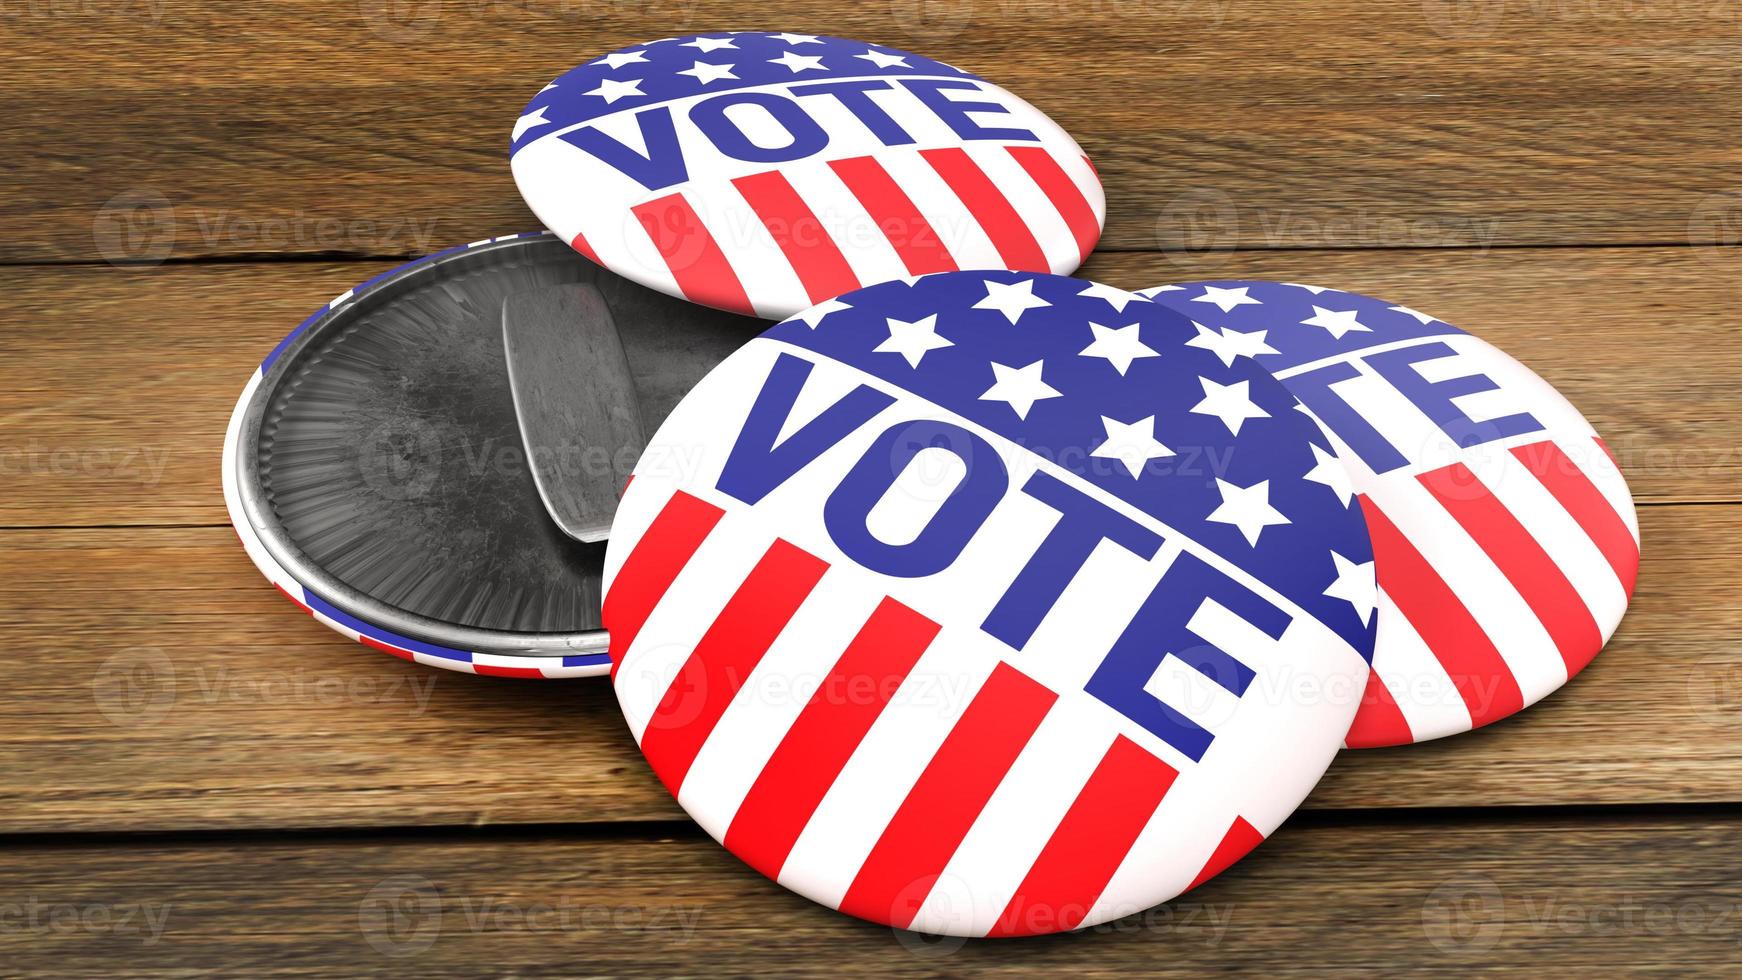 Amerikaanse stembadge op houten tafel voor 3D-rendering van sociale inhoud foto